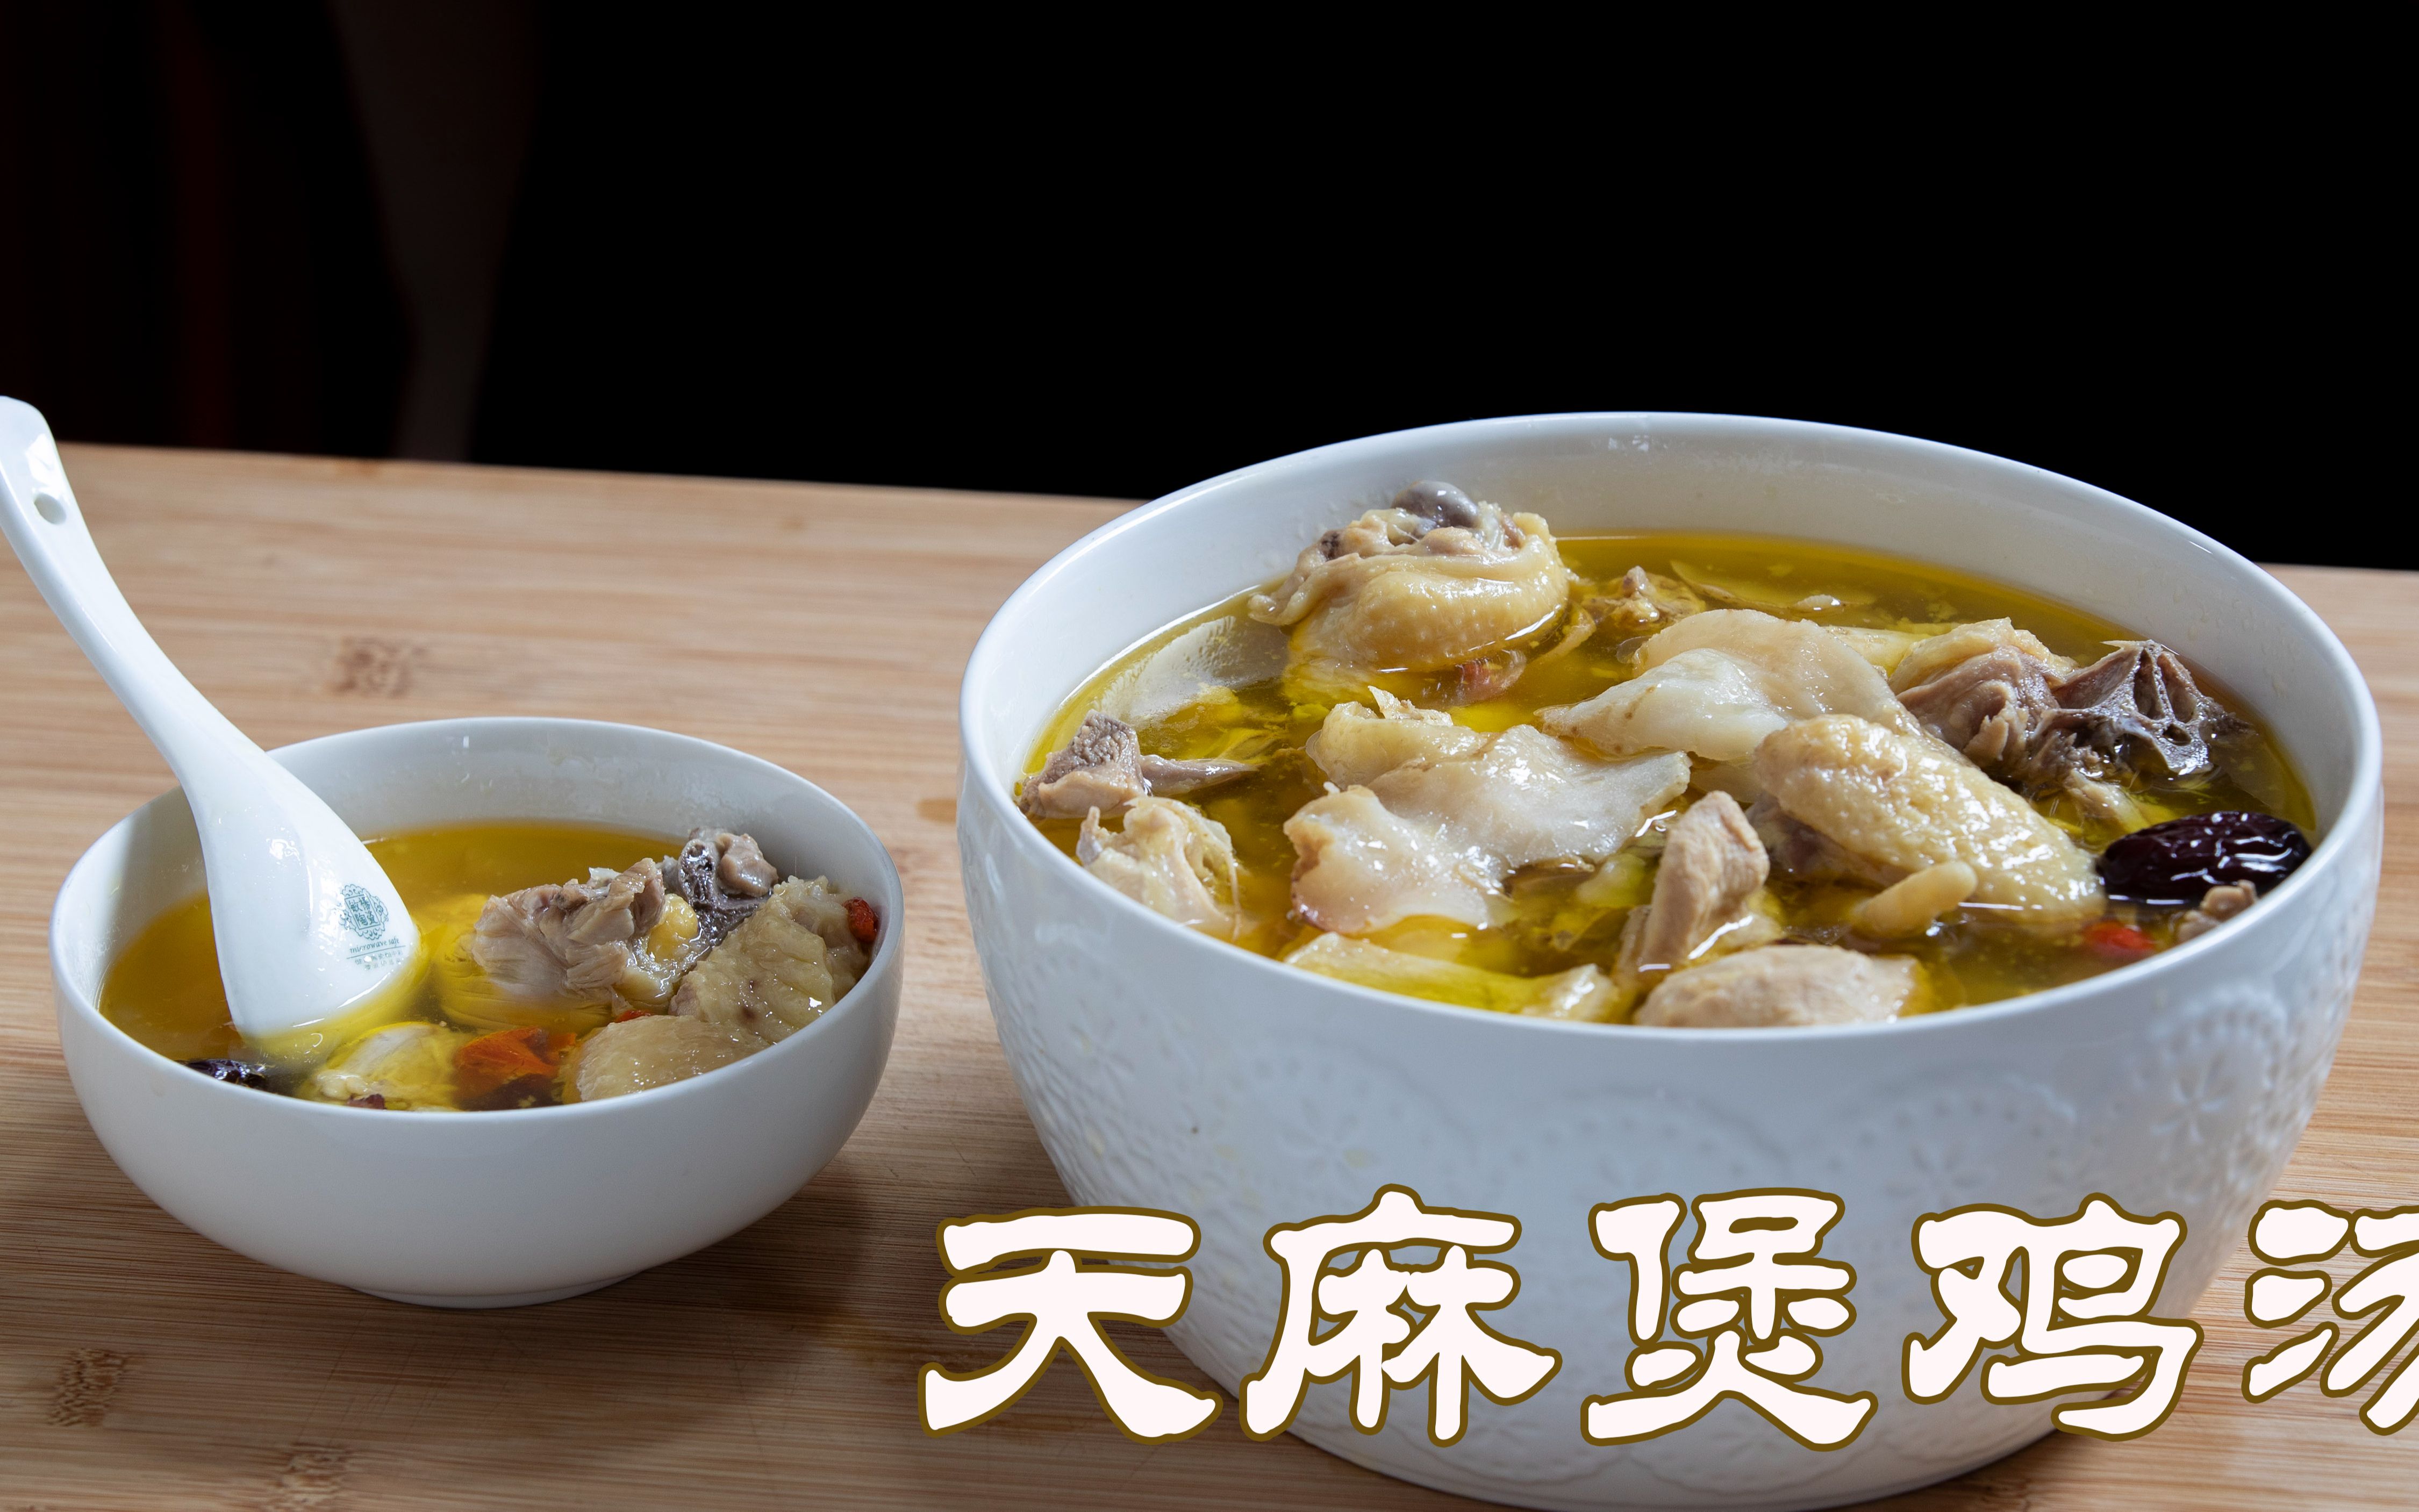 好吃又滋补的土鸡做法天麻煲鸡汤,用砂锅做很简单美味天麻炖土鸡